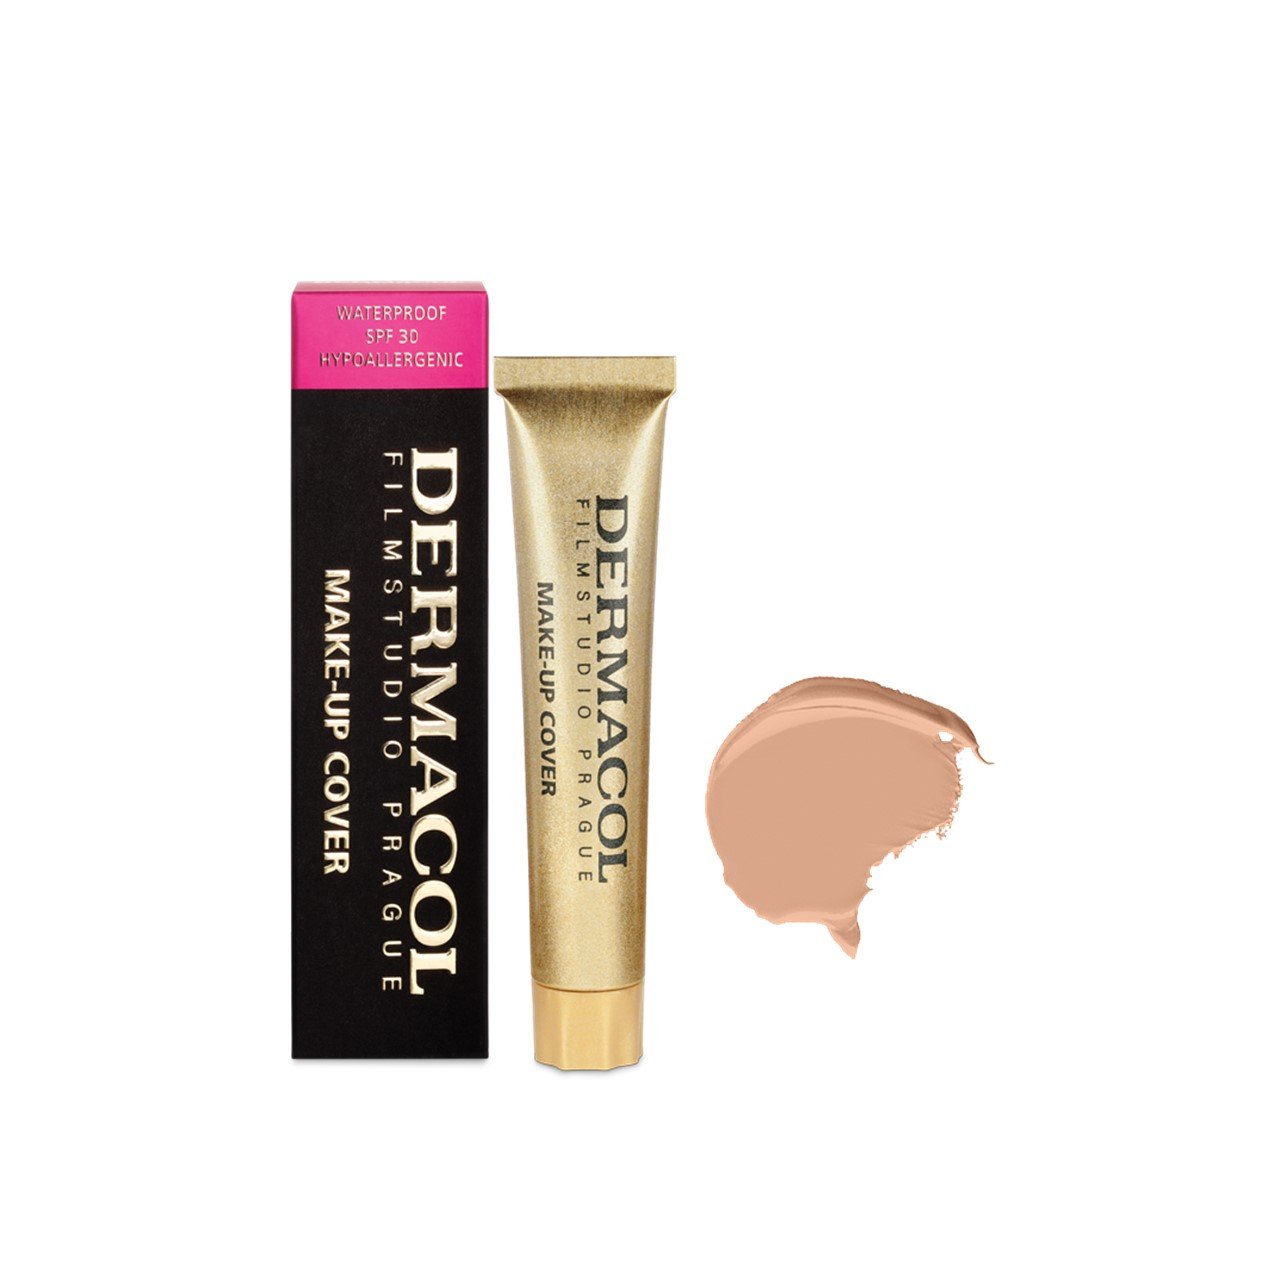 Dermacol Make-Up Cover Foundation SPF30 210 30g (1.06oz)